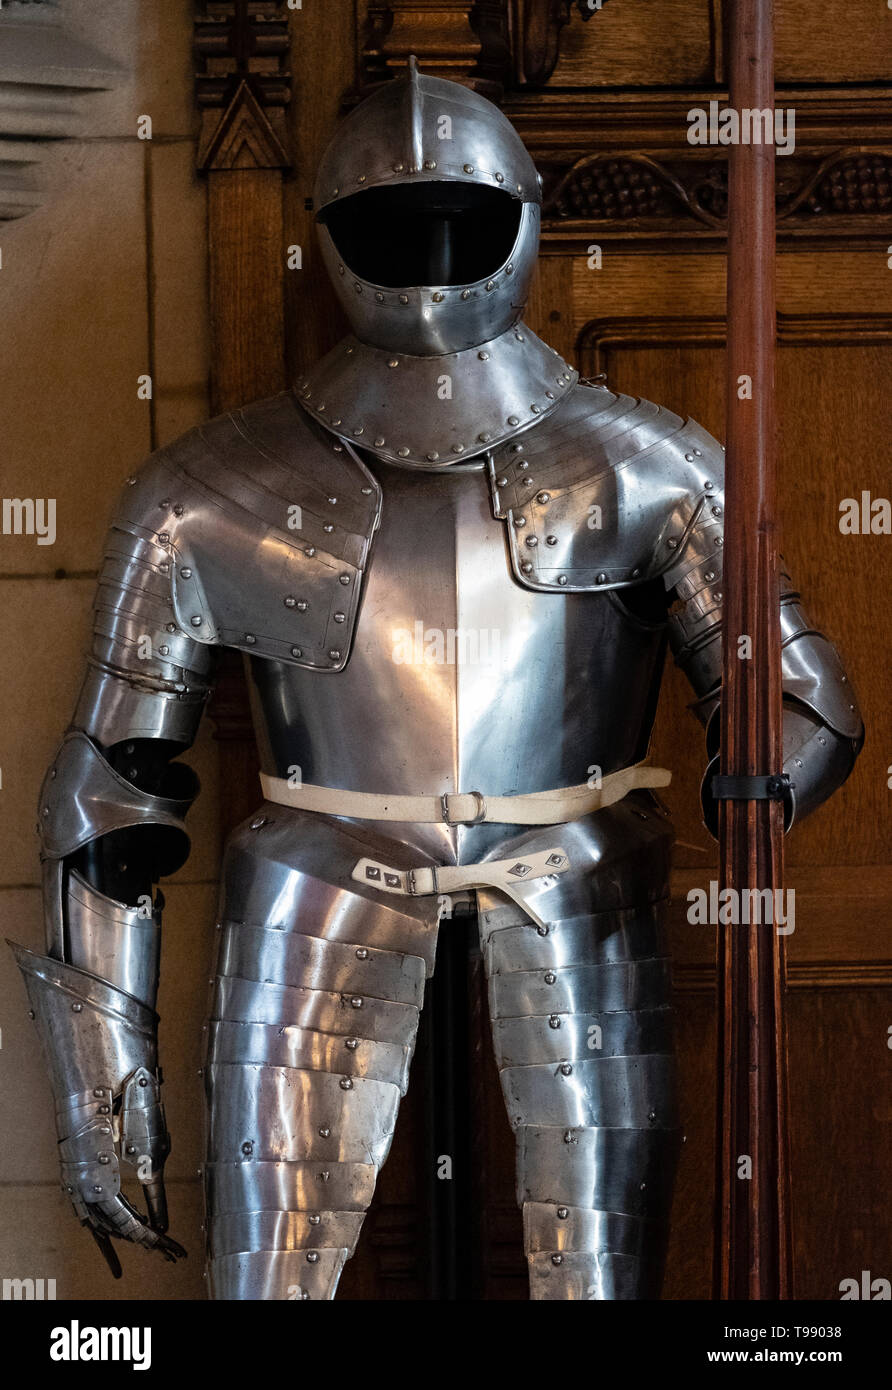 Armatura sul display presso la Grande Sala del Castello di Edimburgo in Scozia, Regno Unito Foto Stock